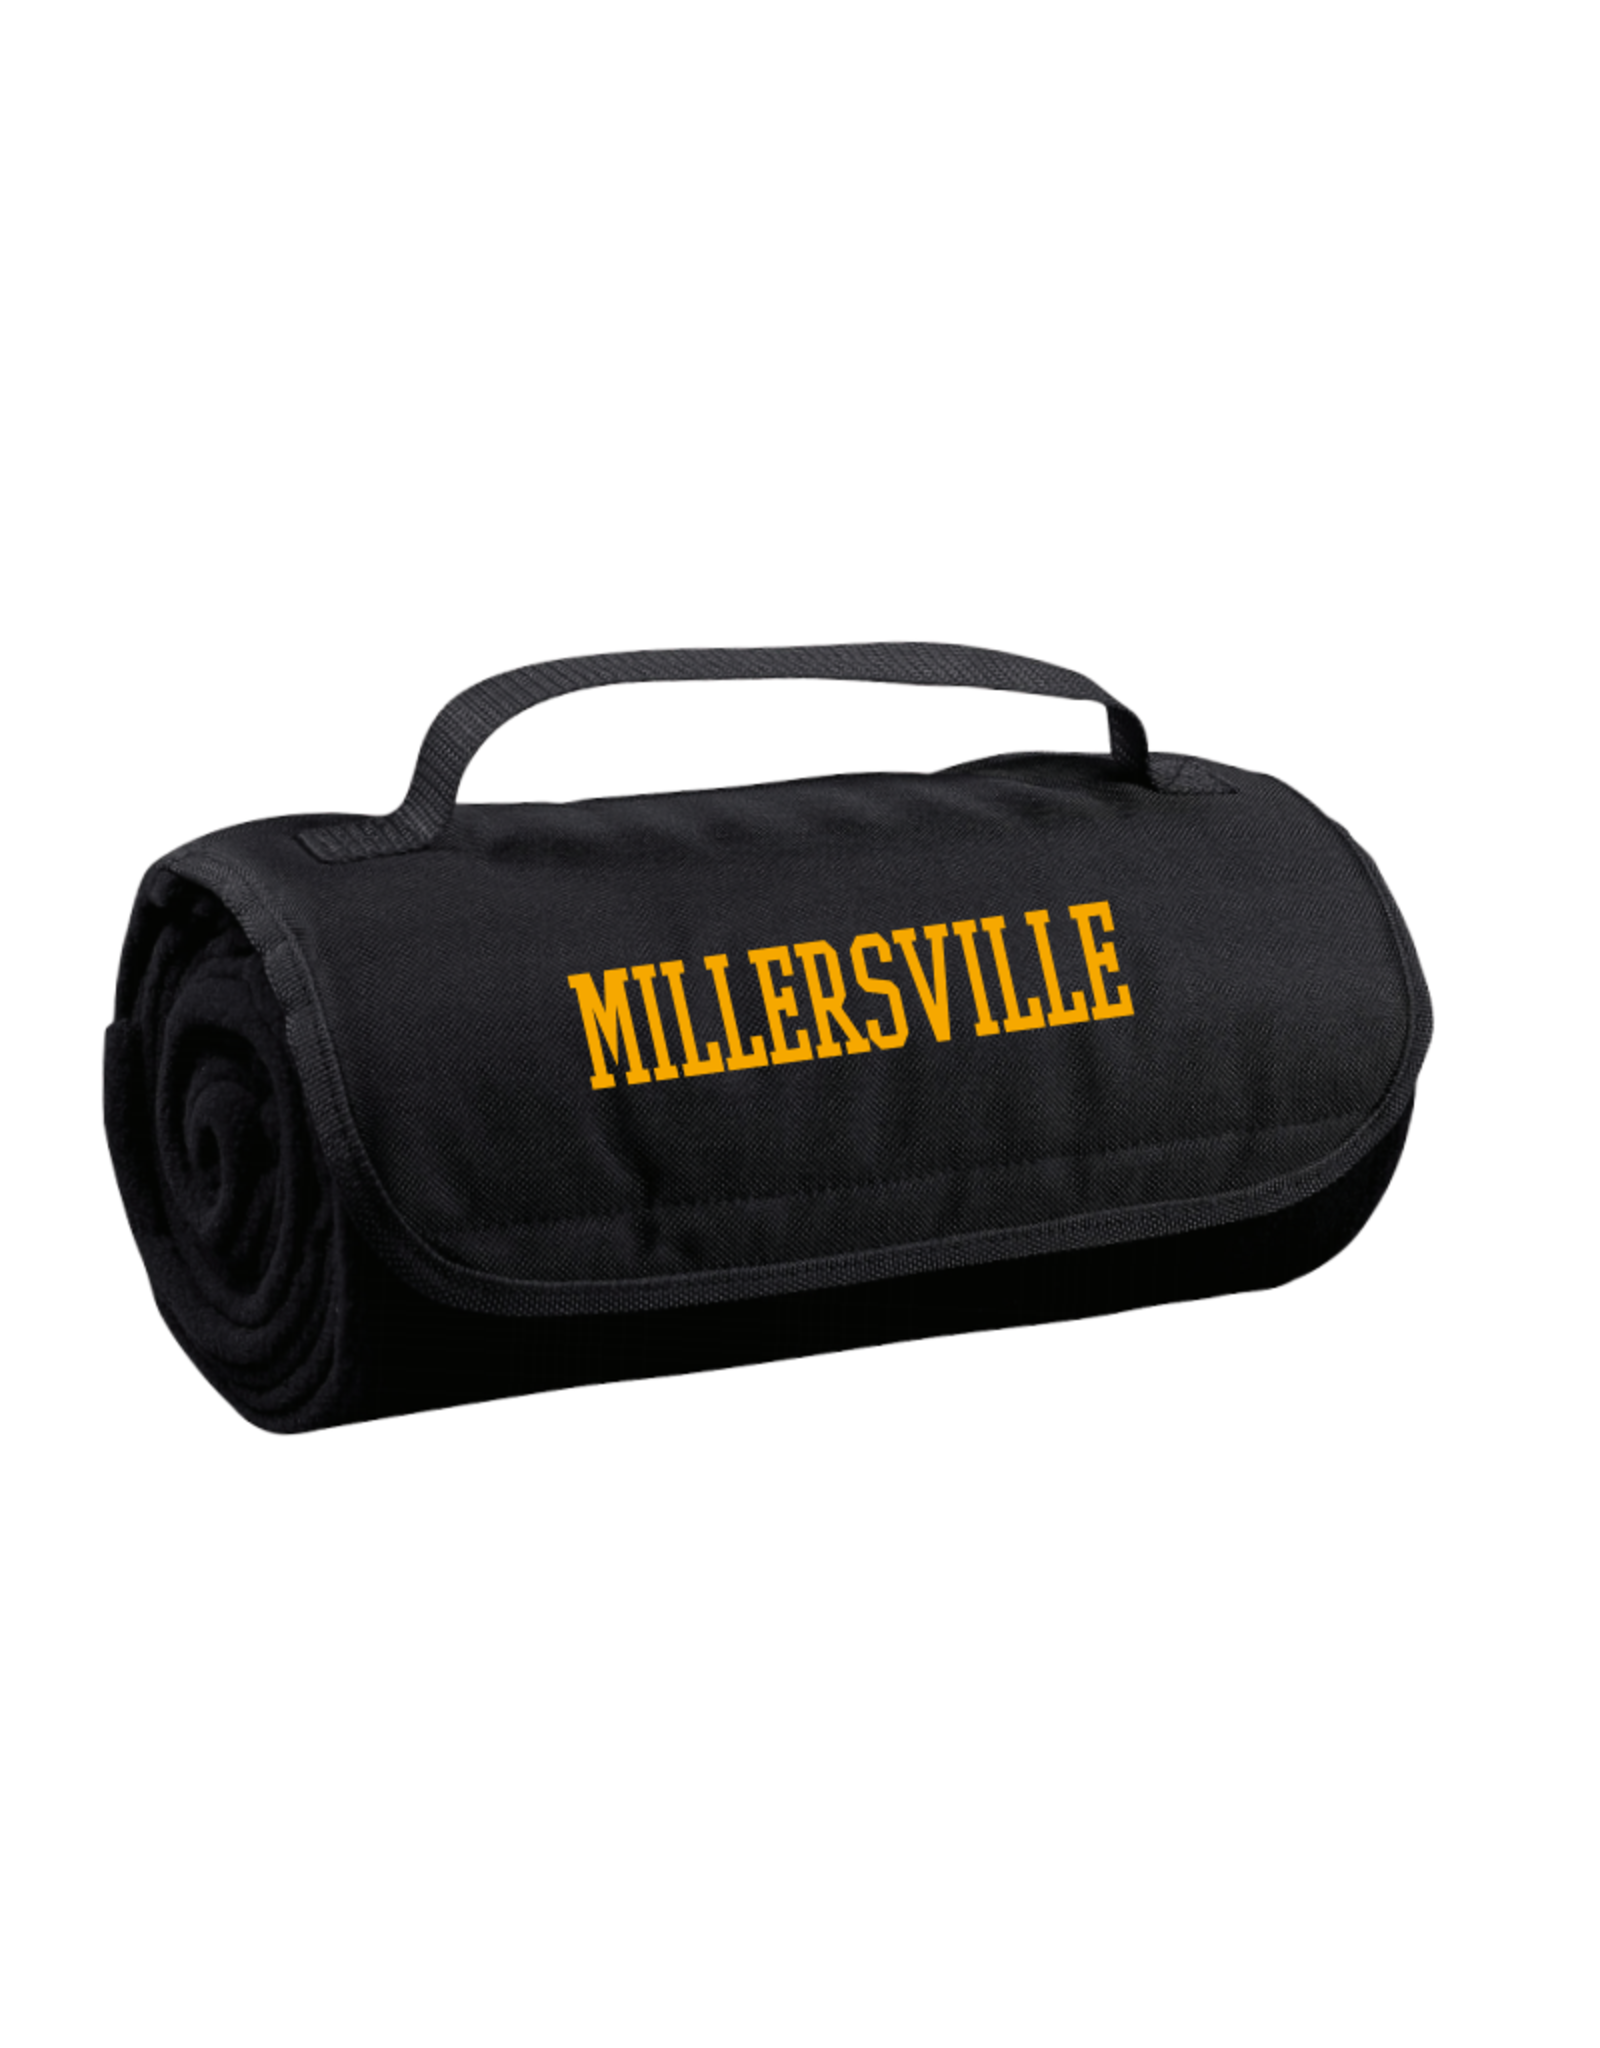 Millersville Travel Blanket